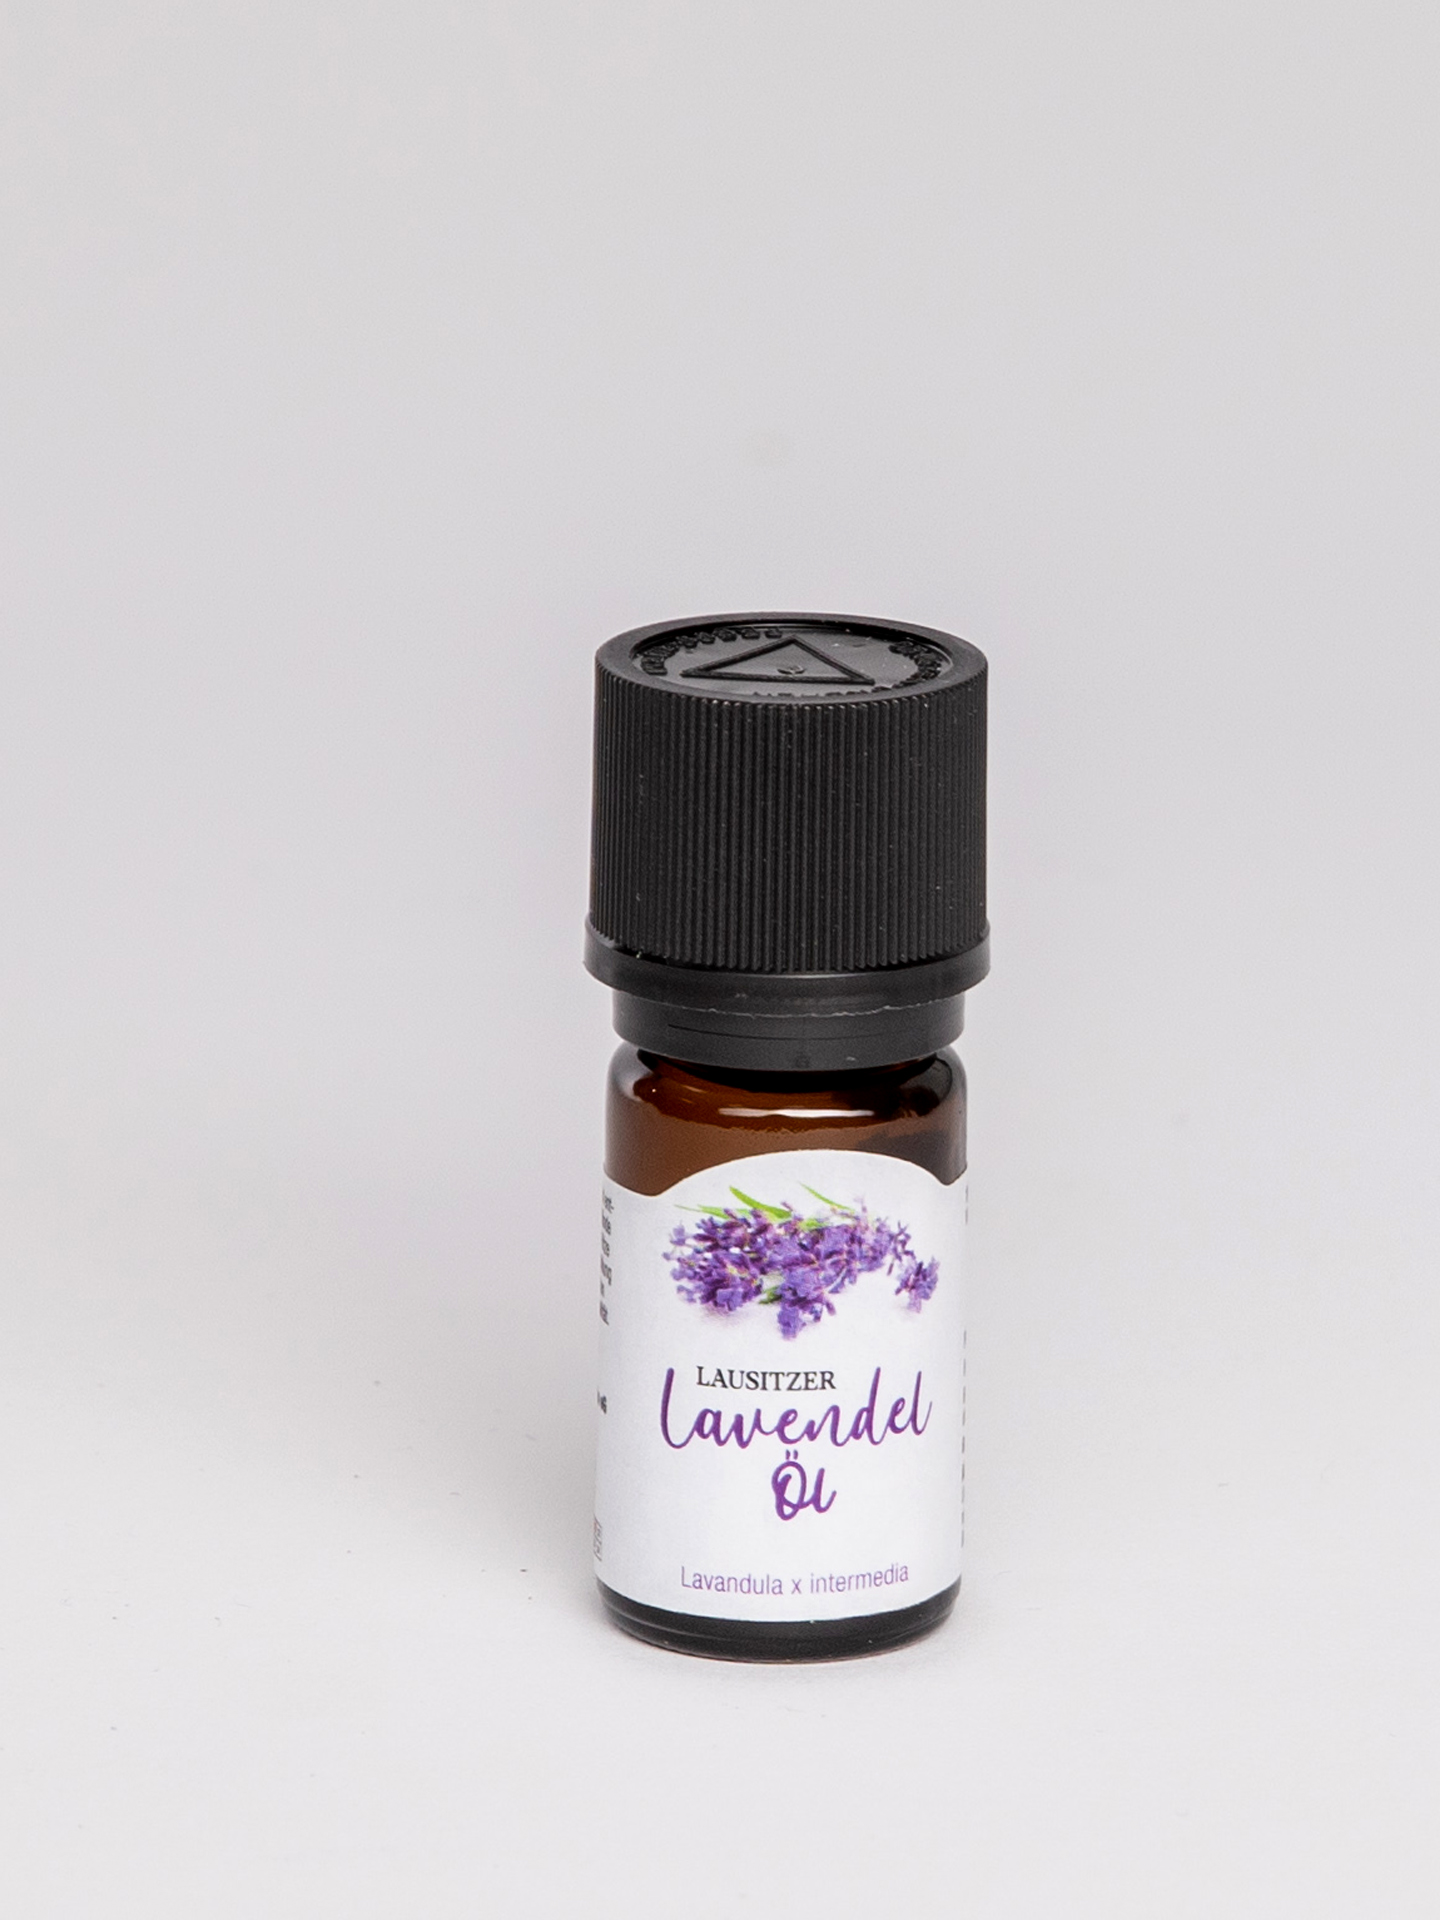 Lavendelöl Lavandula x intermedia 